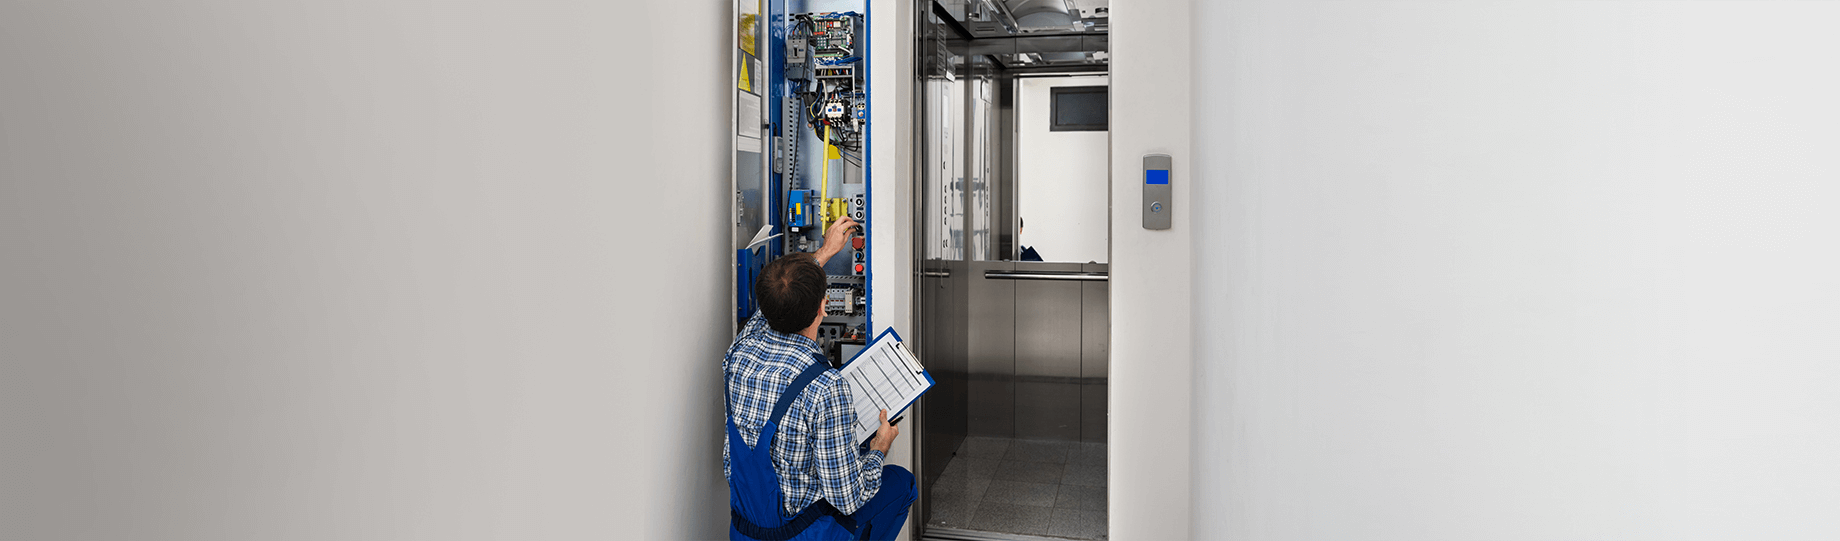 os-elevadores-precisam-de-modernização-técnica